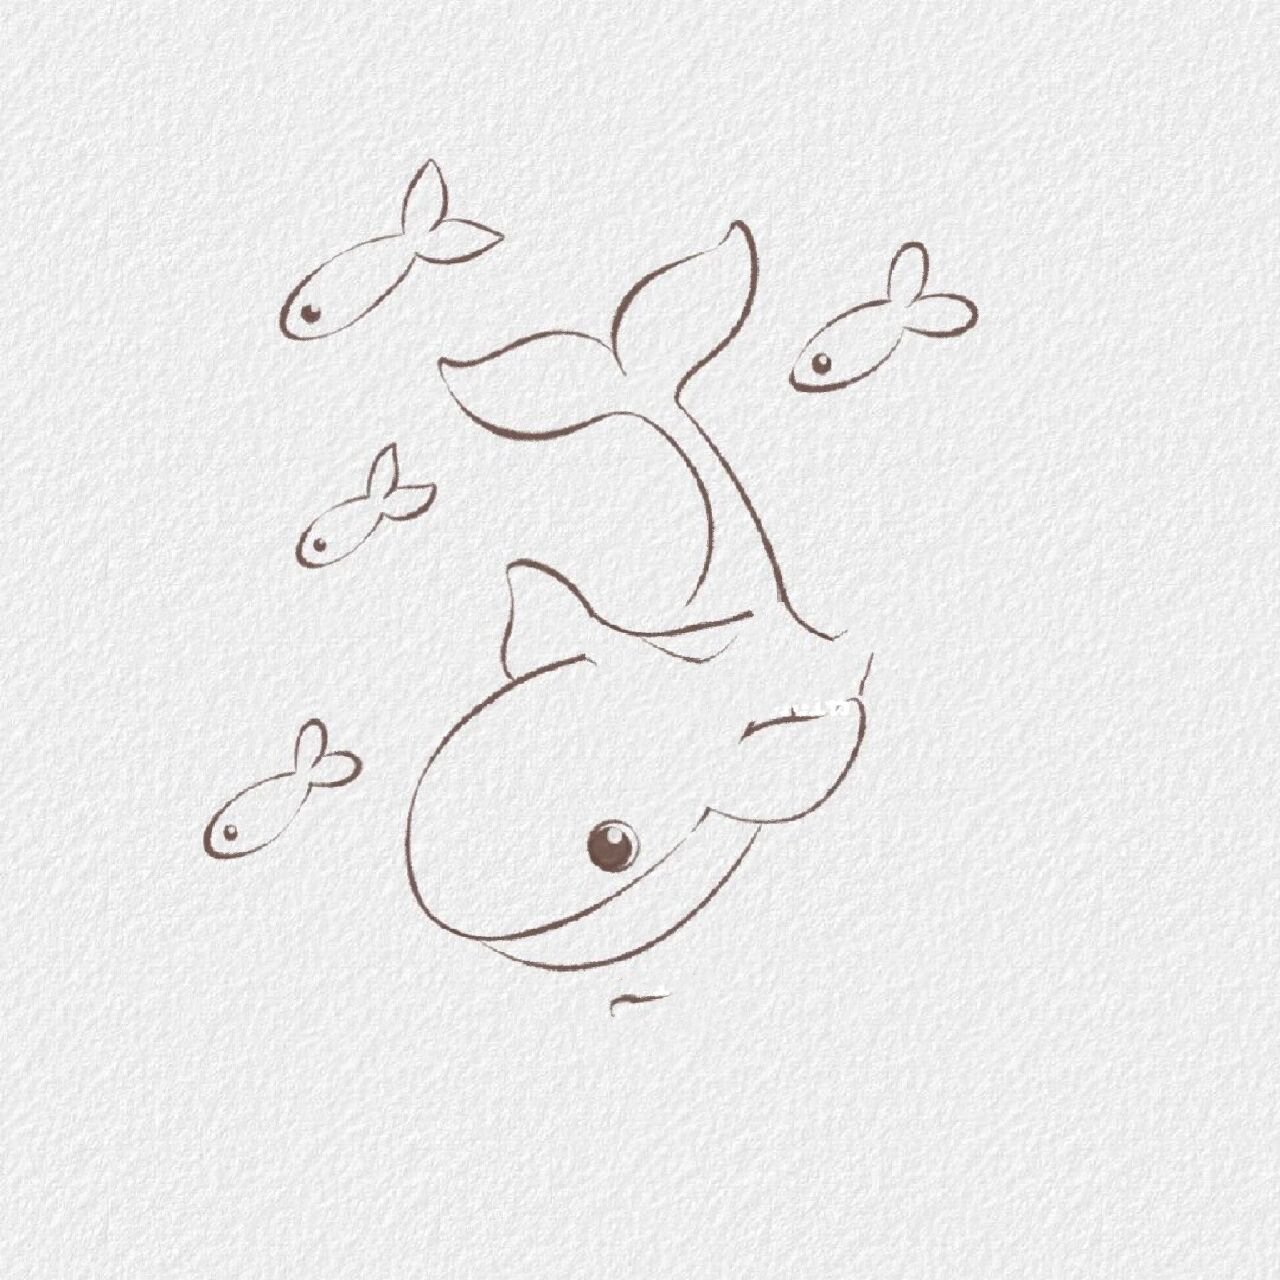 简笔画鲸鱼 海里图片